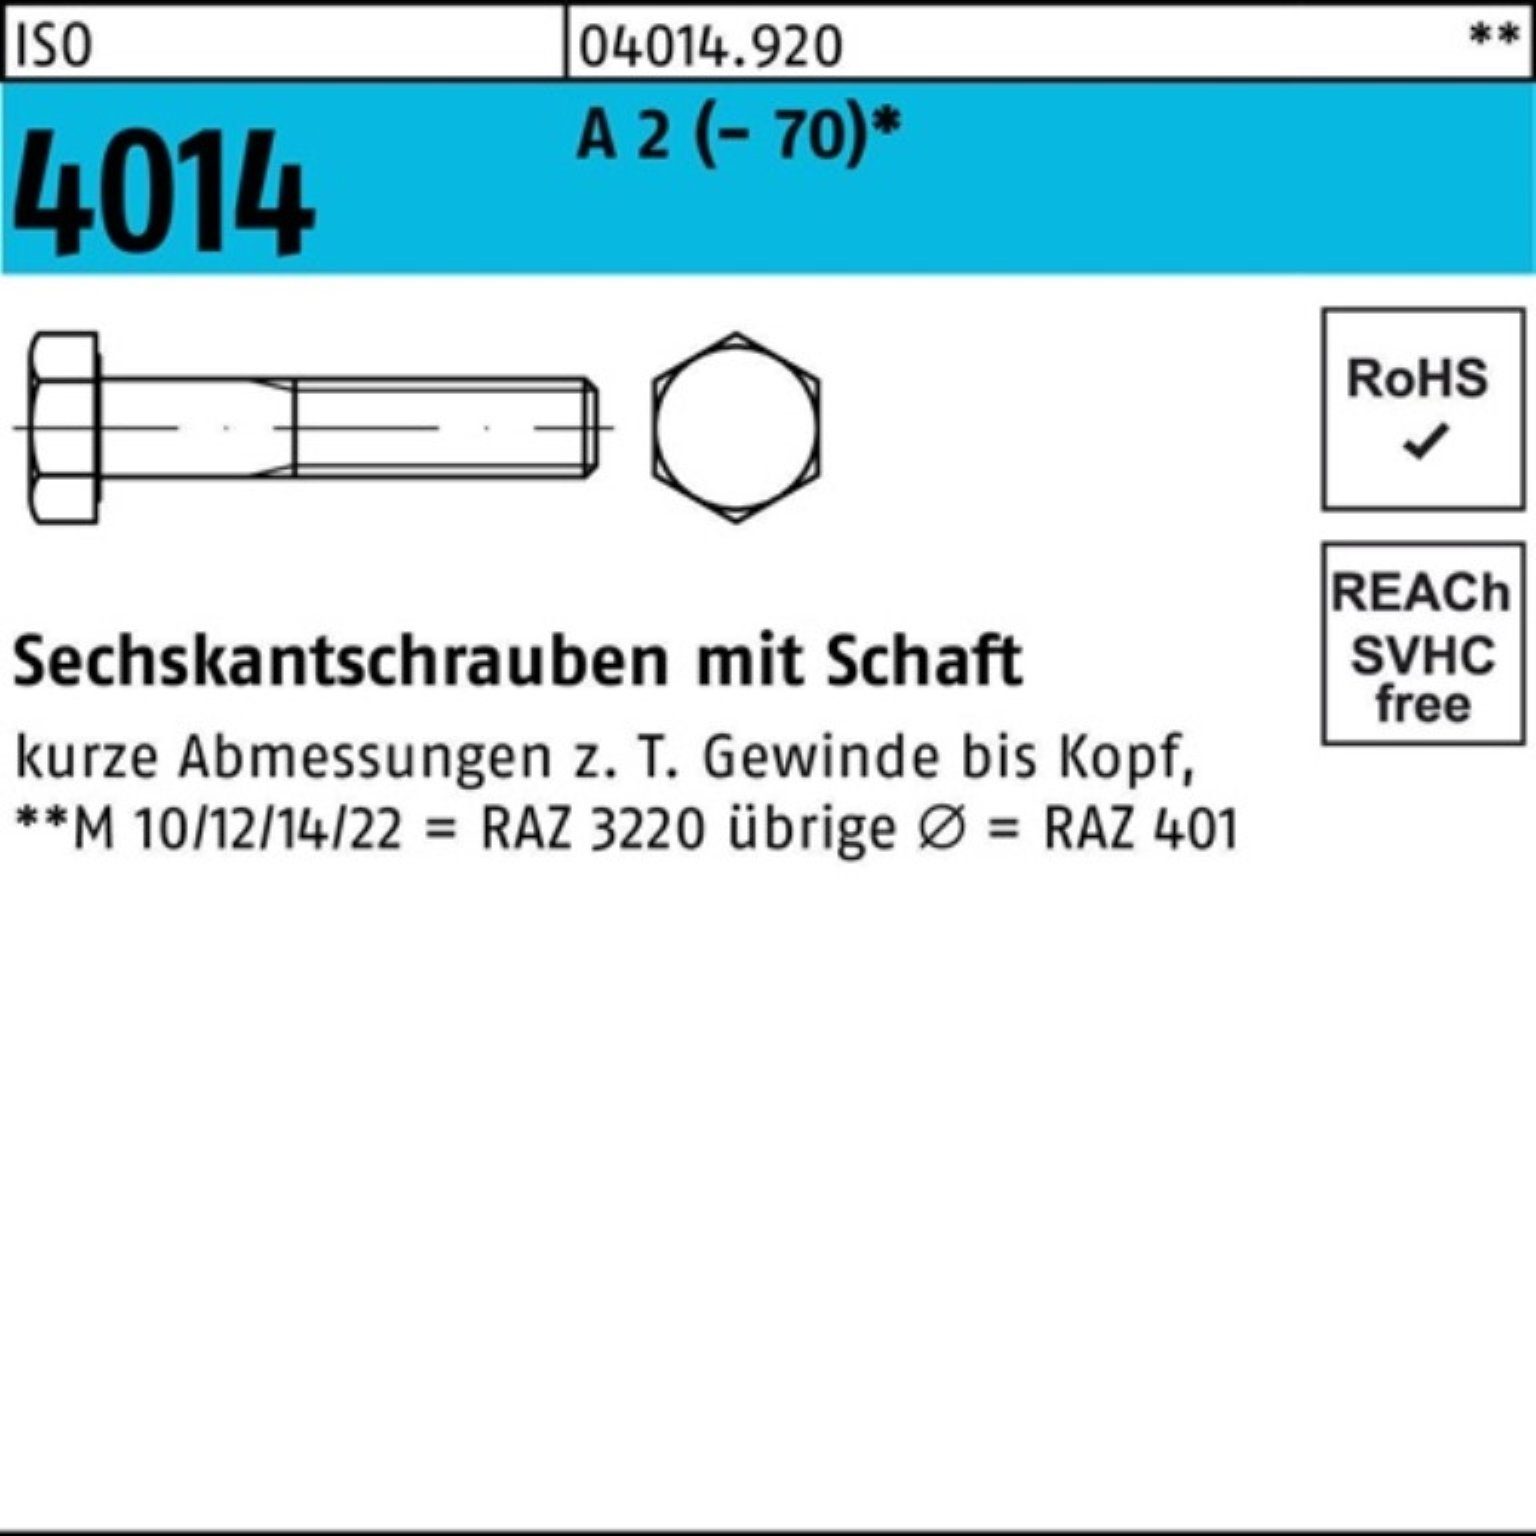 Bufab Sechskantschraube 100er Pack Sechskantschraube ISO 4014 Schaft M18x 75 A 2 (70) 1 Stü